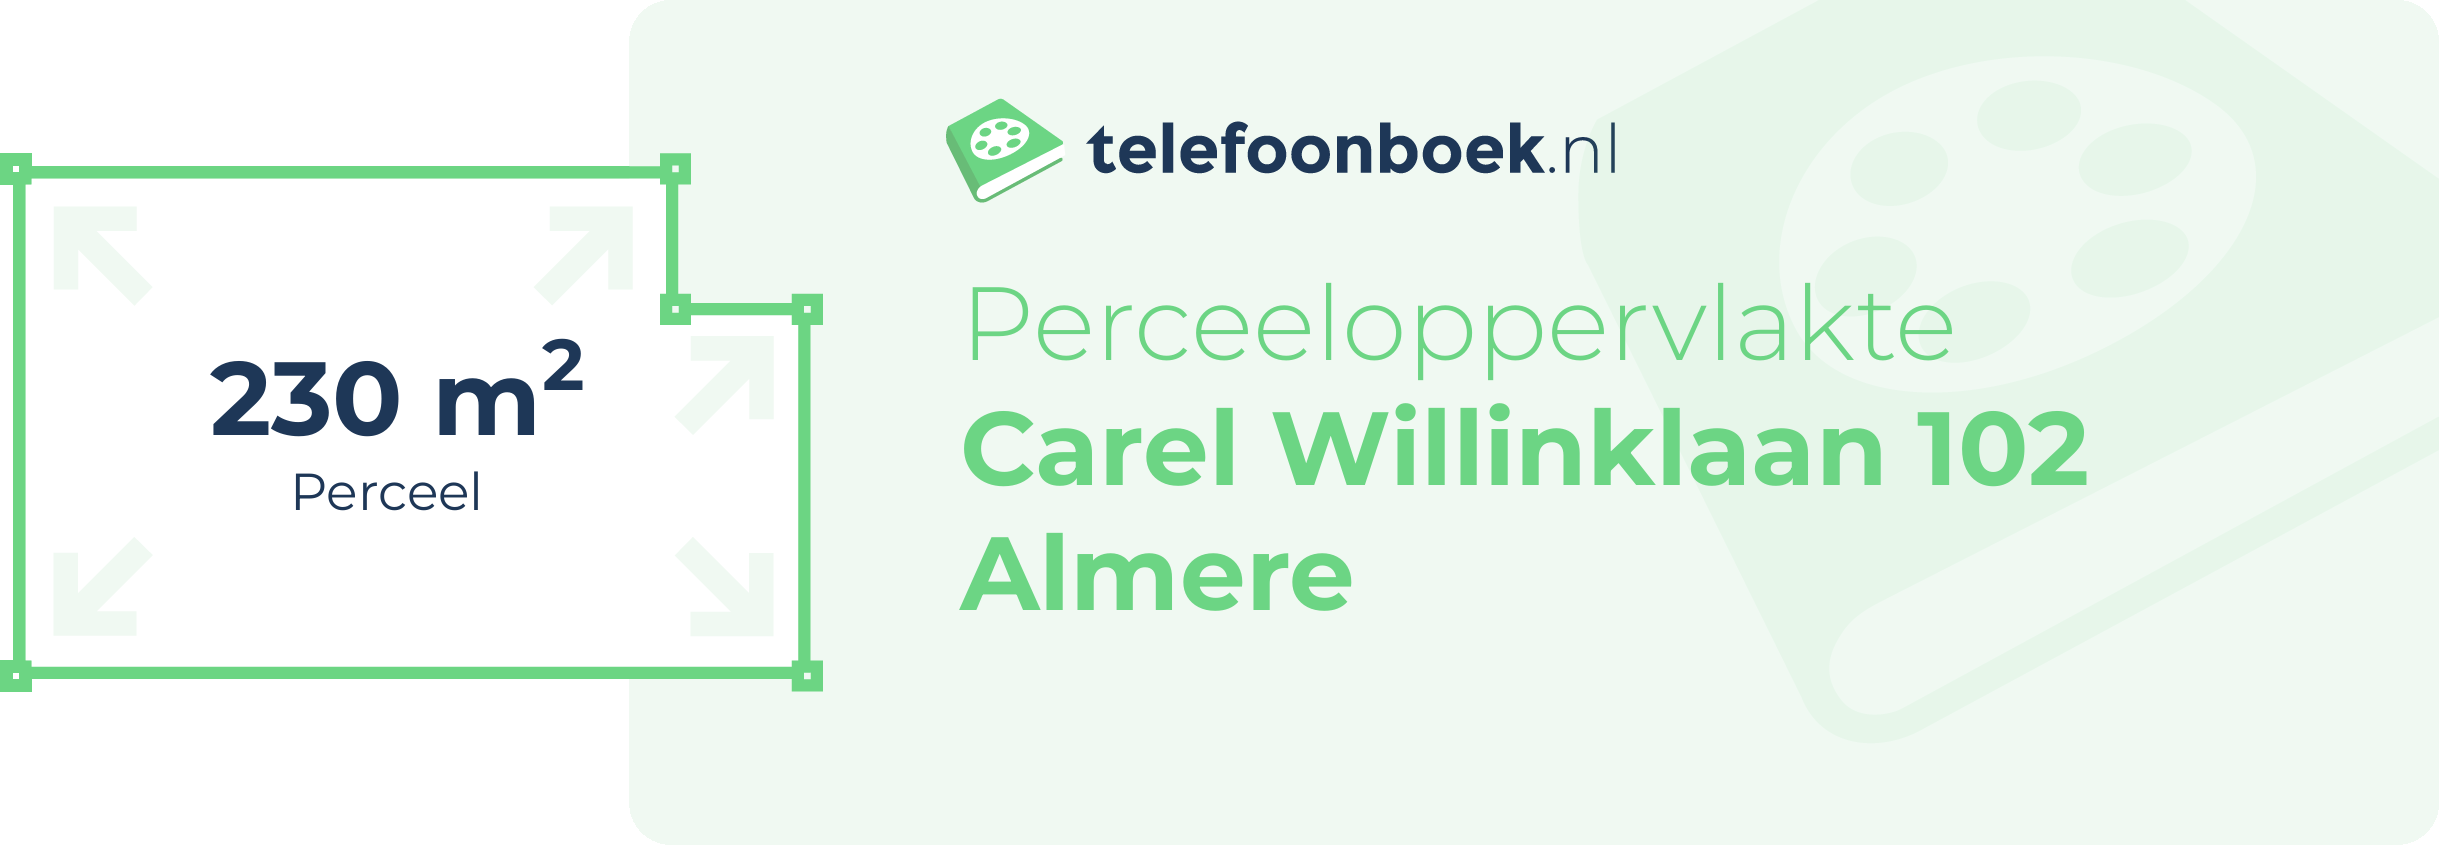 Perceeloppervlakte Carel Willinklaan 102 Almere